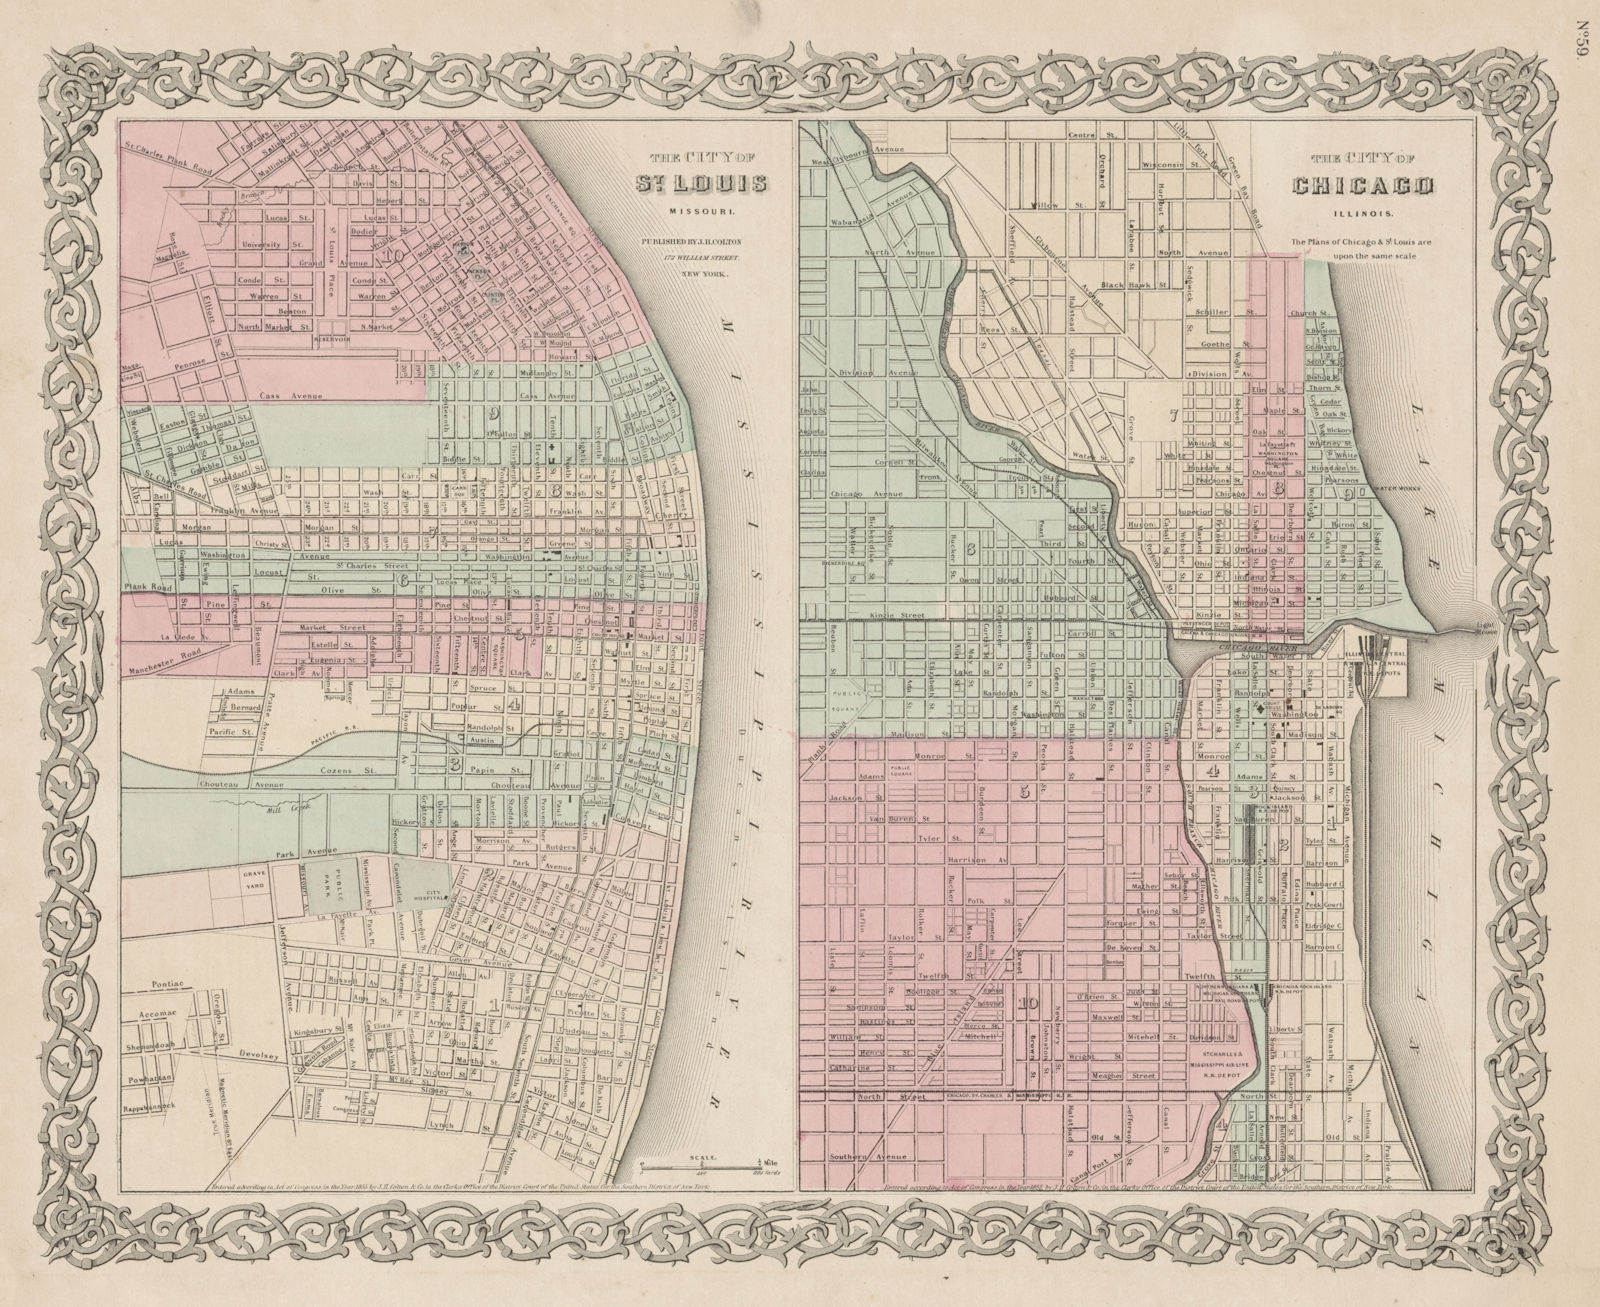 St Louis, Missouri & Chicago, Illinois antique city plans. COLTON 1863 old map